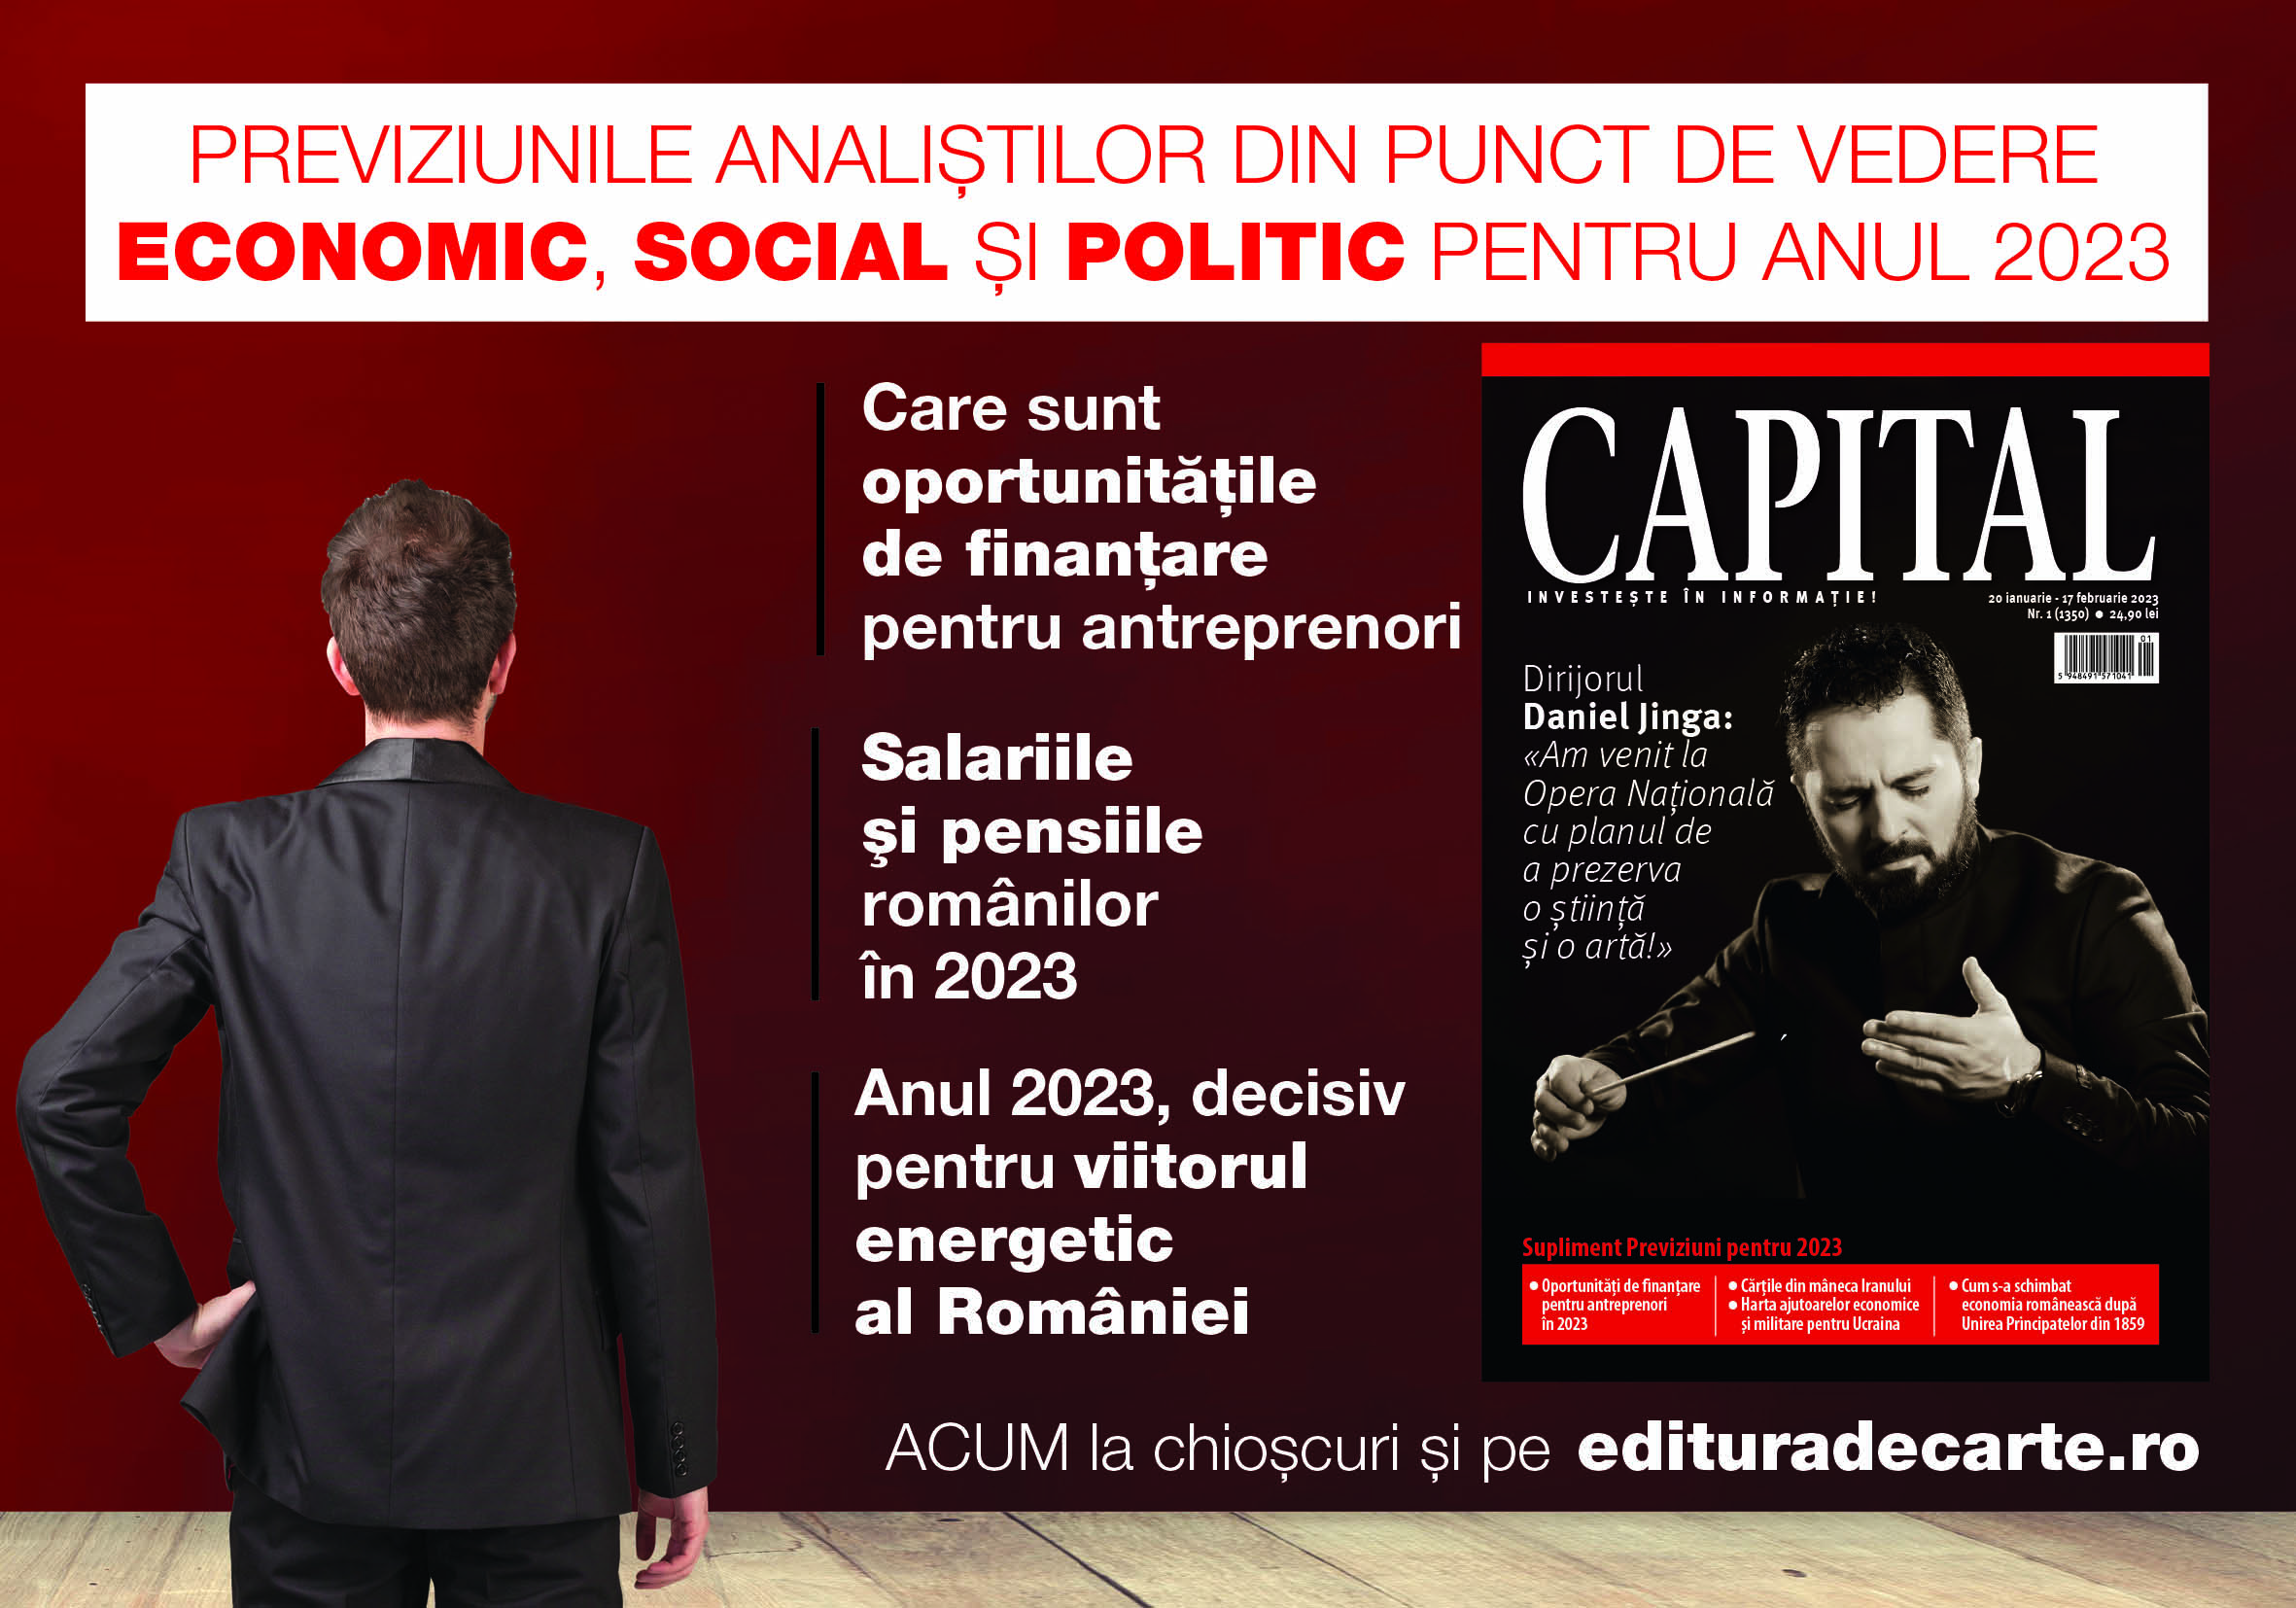 Află previziunile analiștilor din punct de vedere economic, social și politic pentru anul 2023 din revista Capital